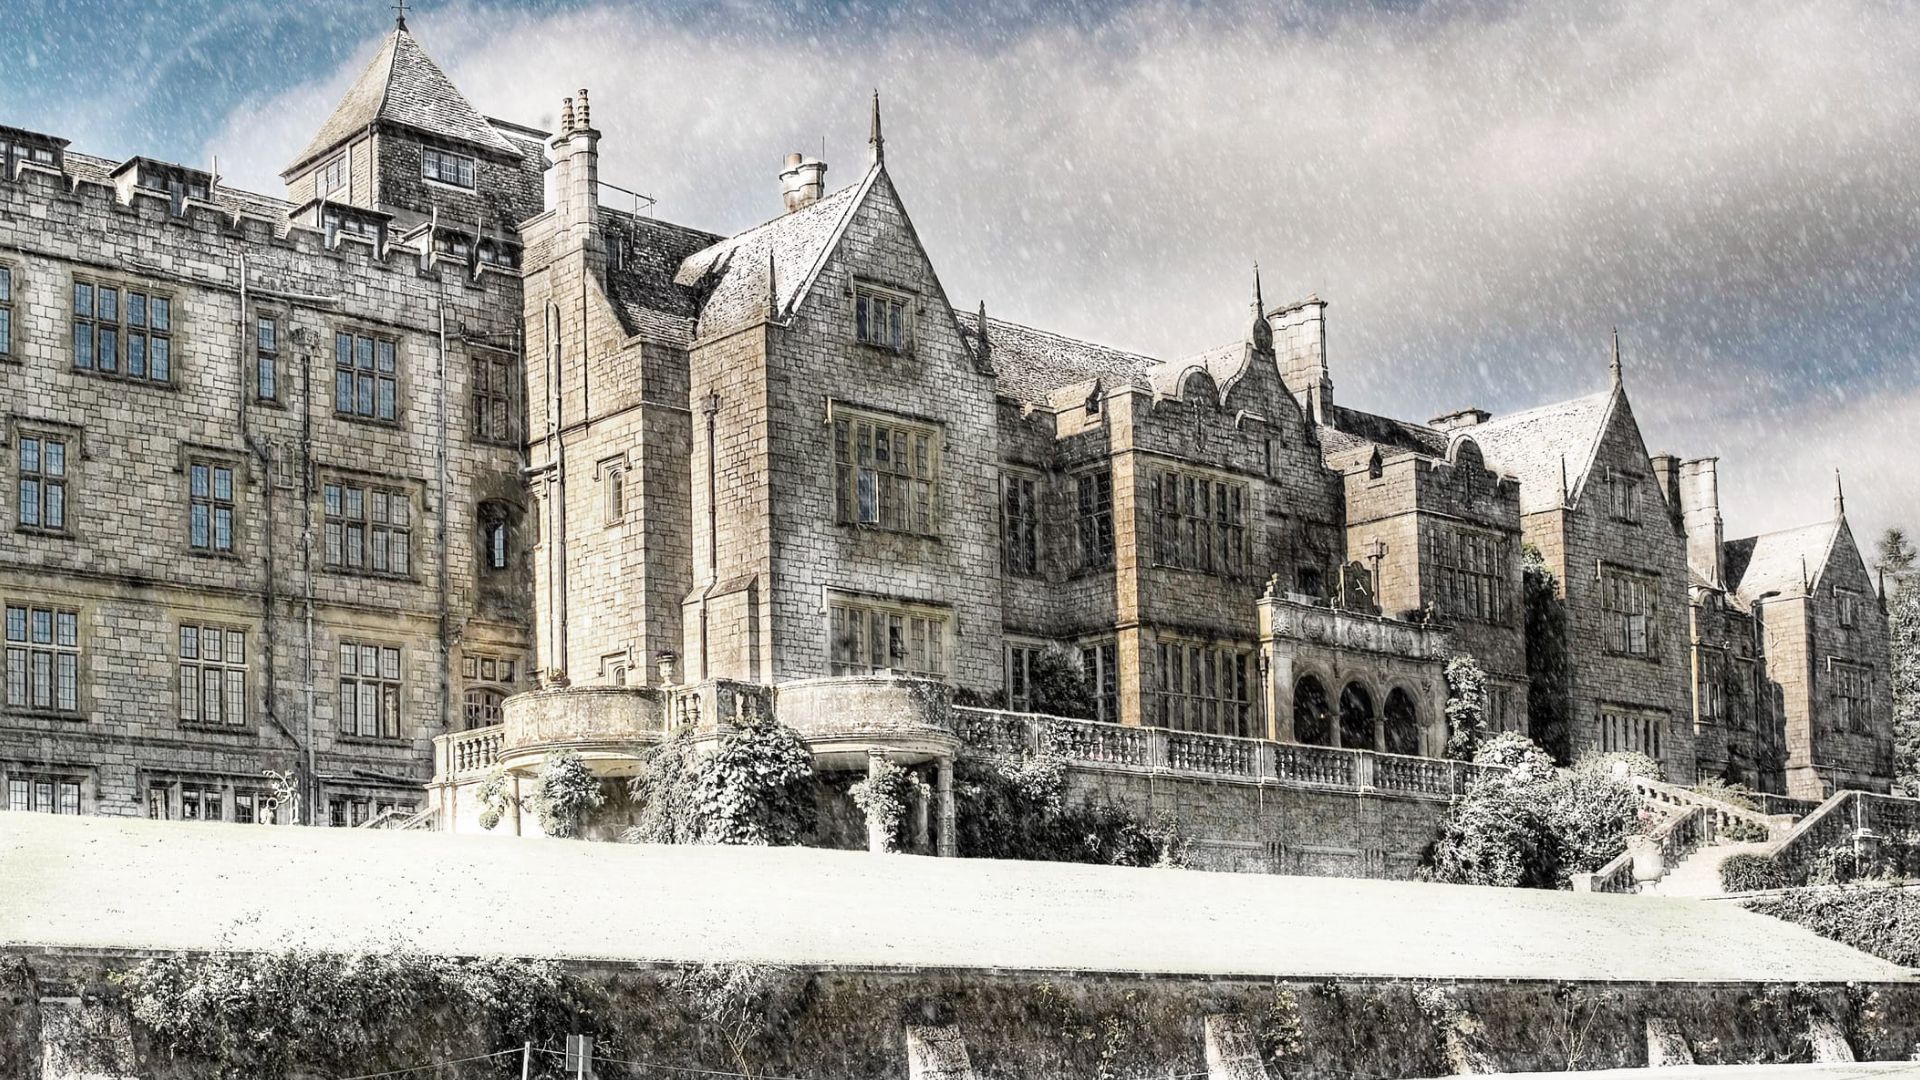 Bovey Castle exterior during winter scene 